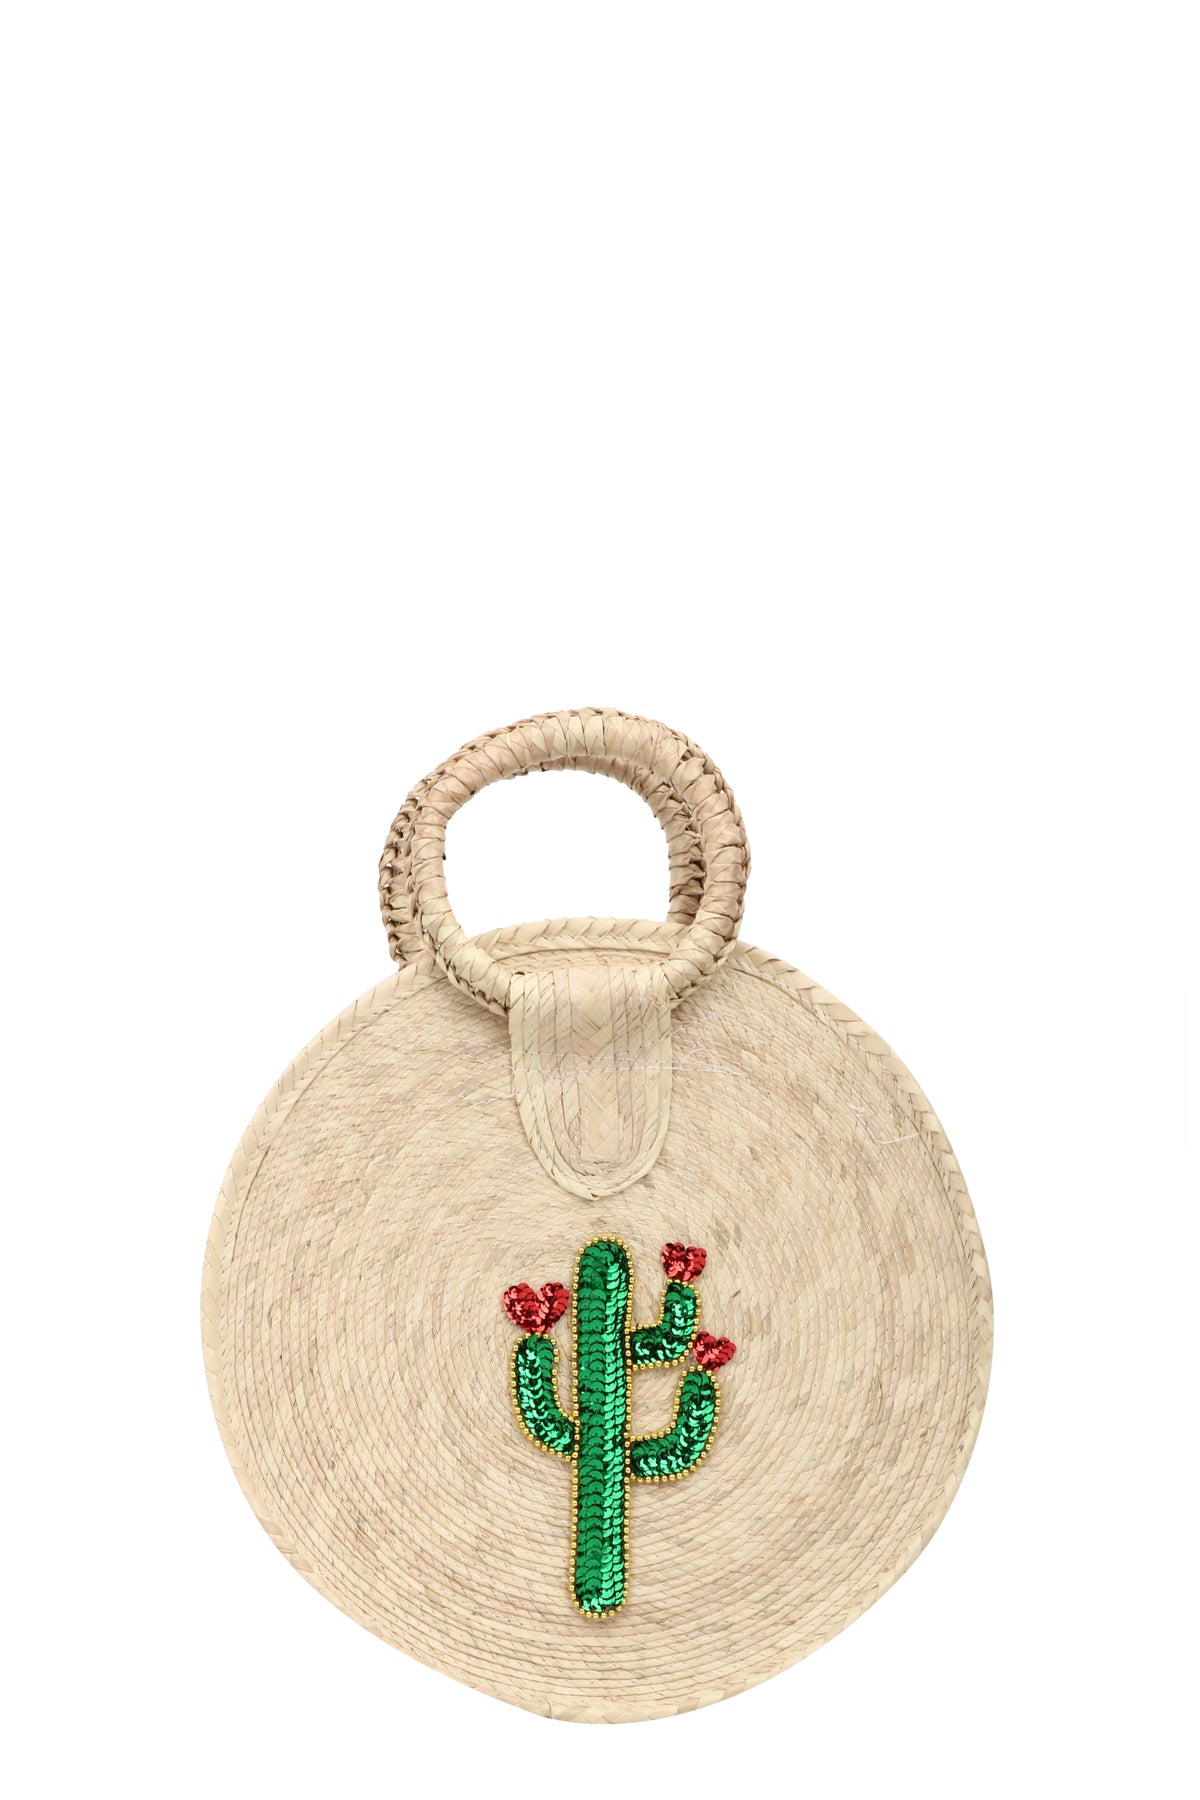 Small Jute Handbag with Cactus